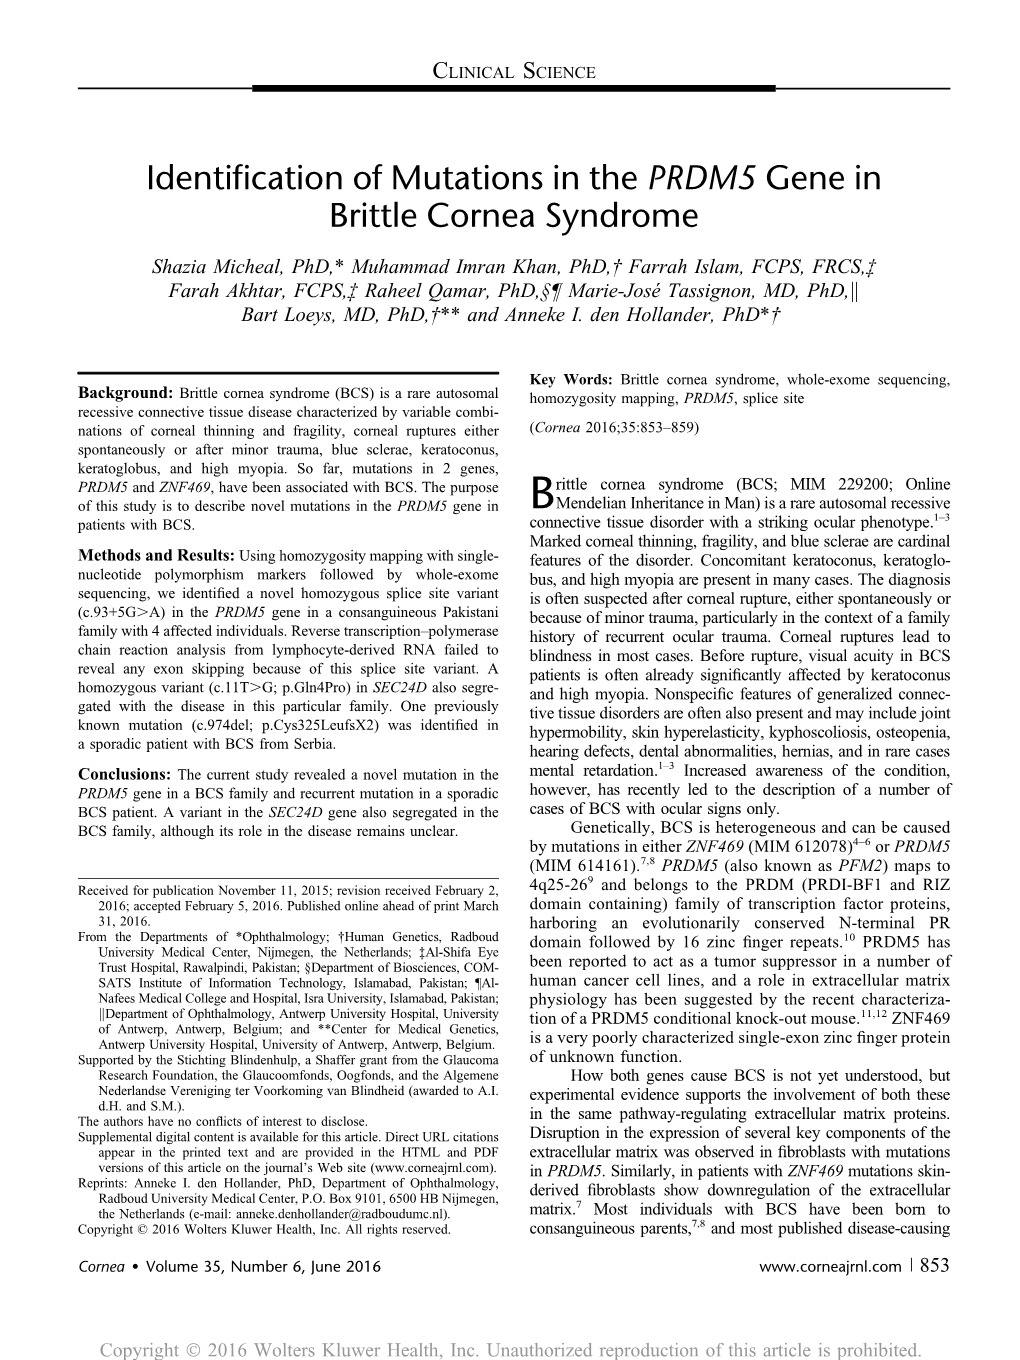 Identification of Mutations in the PRDM5 Gene in Brittle Cornea